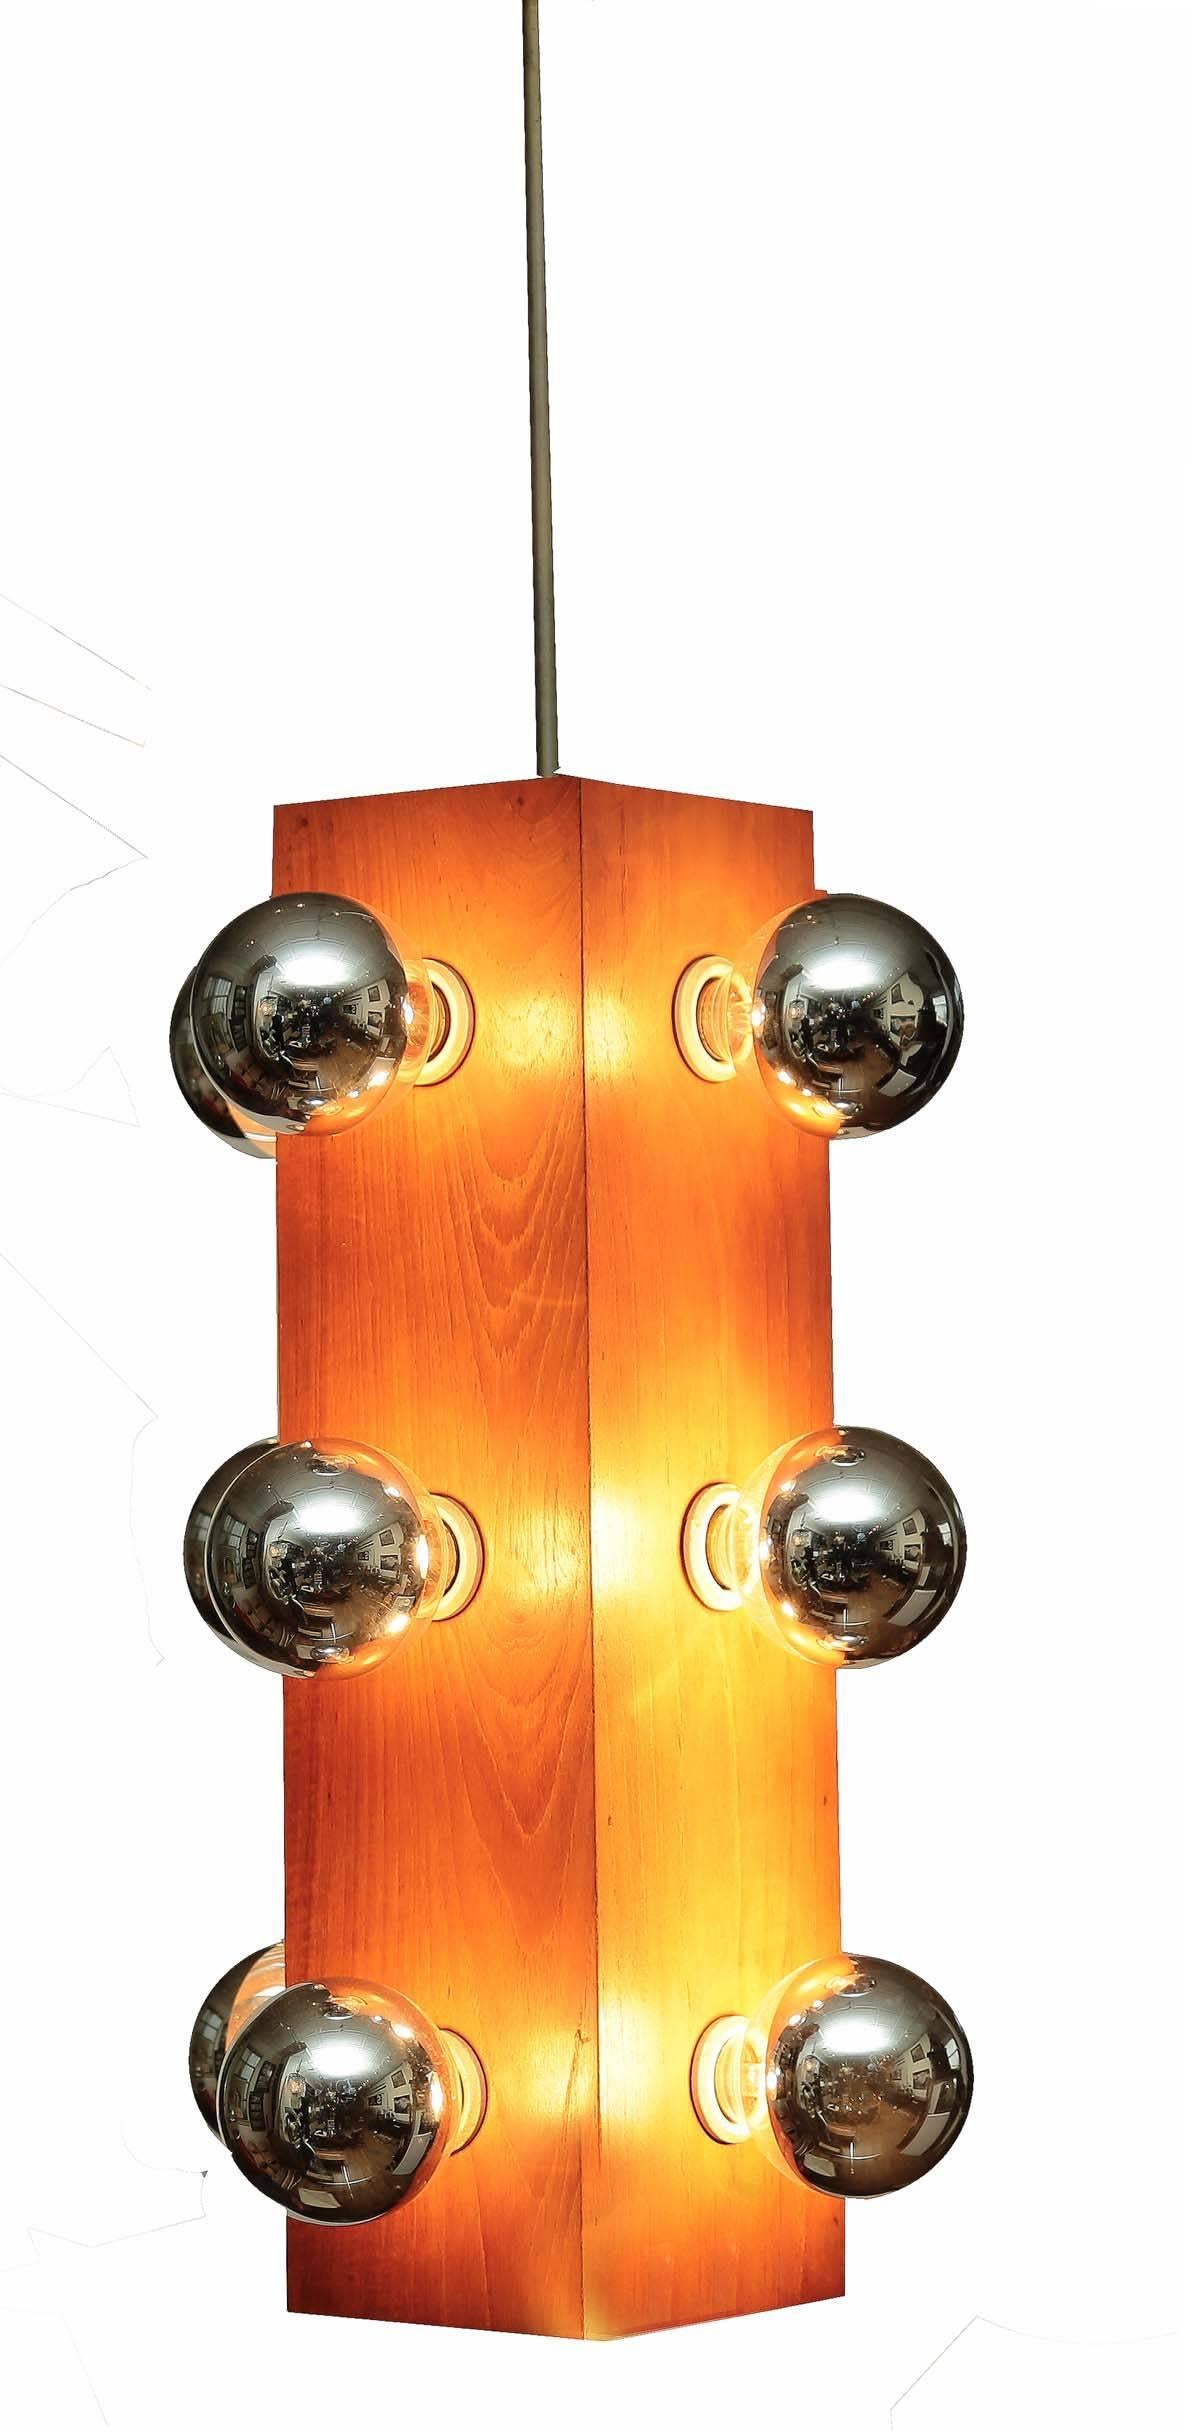 Schöne Midcentury-Leuchte, zwölf Glühbirnen bietet großes Licht; Palisanderholz Basis ist perfekt funktionierender Ordnung.